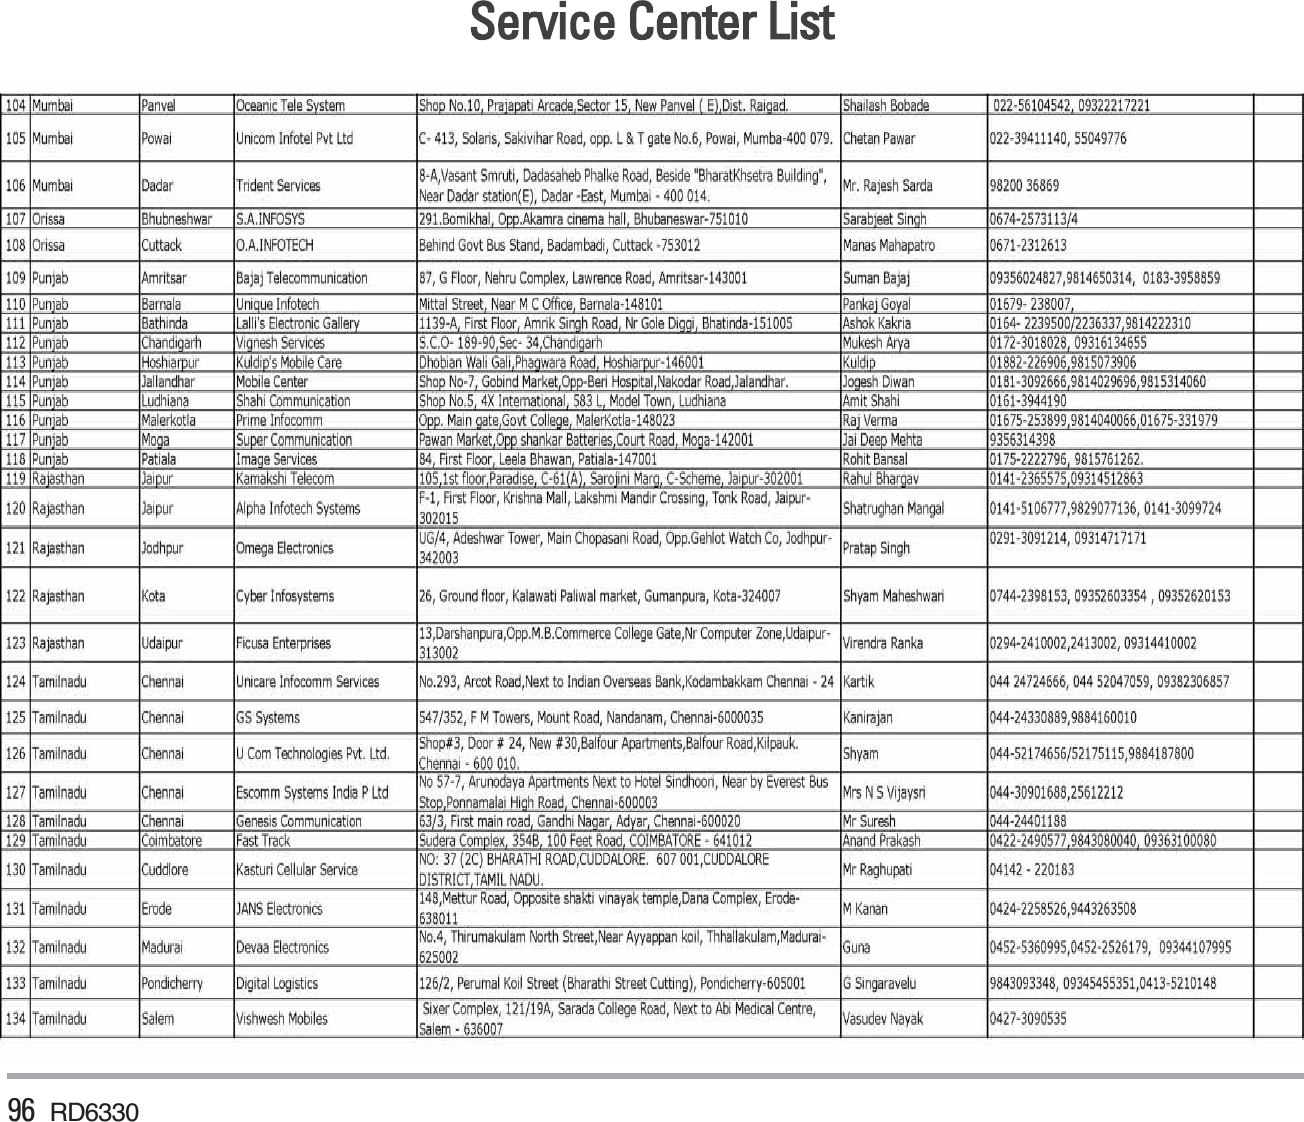 96 RD6330Service Center List